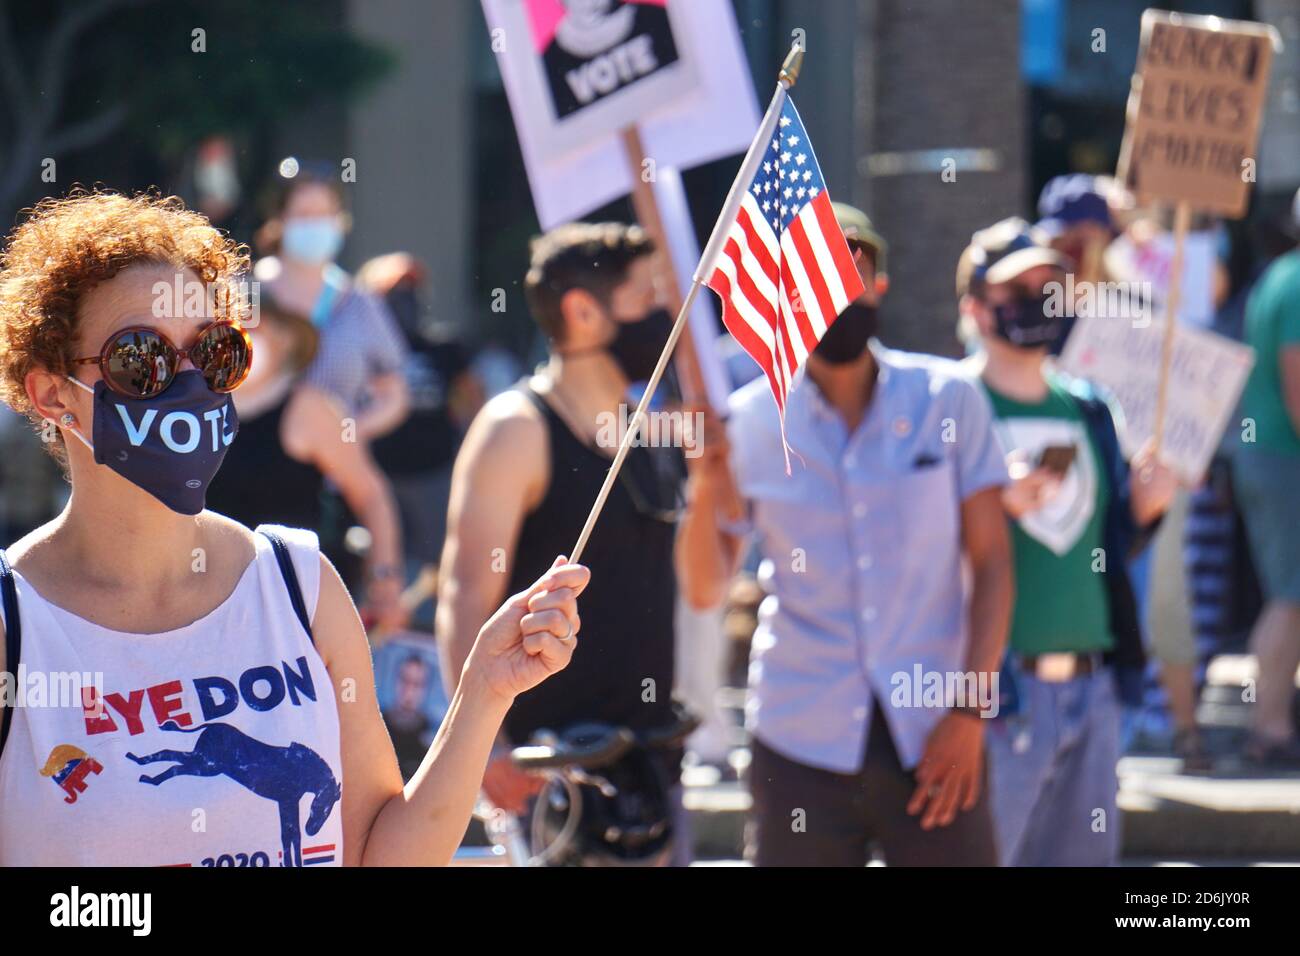 17 ottobre 2020. San Francisco - la marcia delle donne. L'elettore Biden indossa una maschera di voto, una t-shirt Bye Don, e detiene una bandiera americana poco prima dell'elezione degli Stati Uniti. Foto Stock